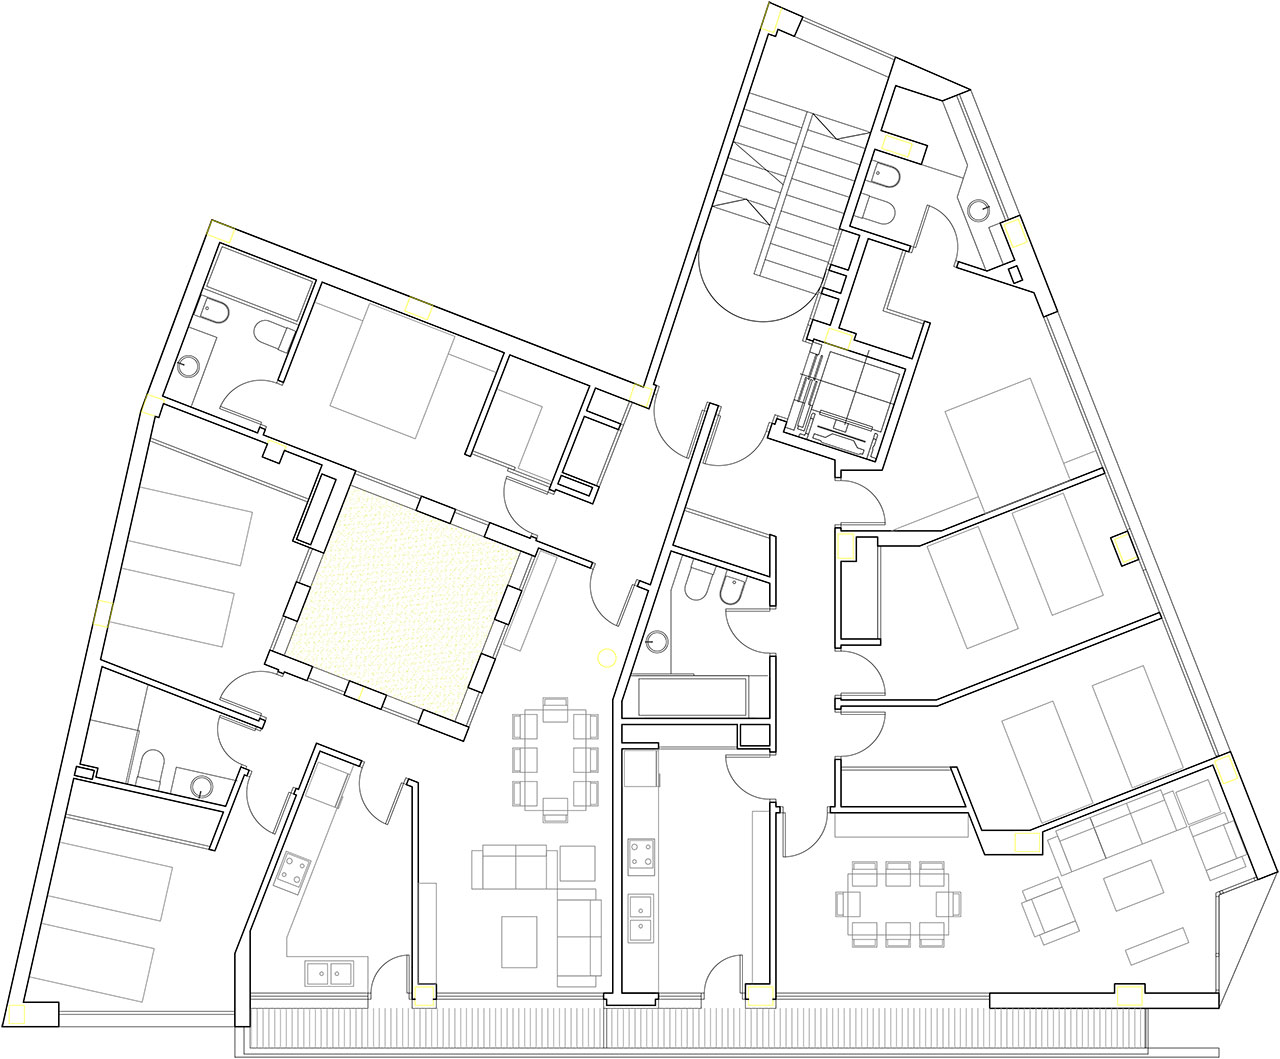 Plano del proyecto de construcción de edificio viviendas con fachadas a dos orientaciones